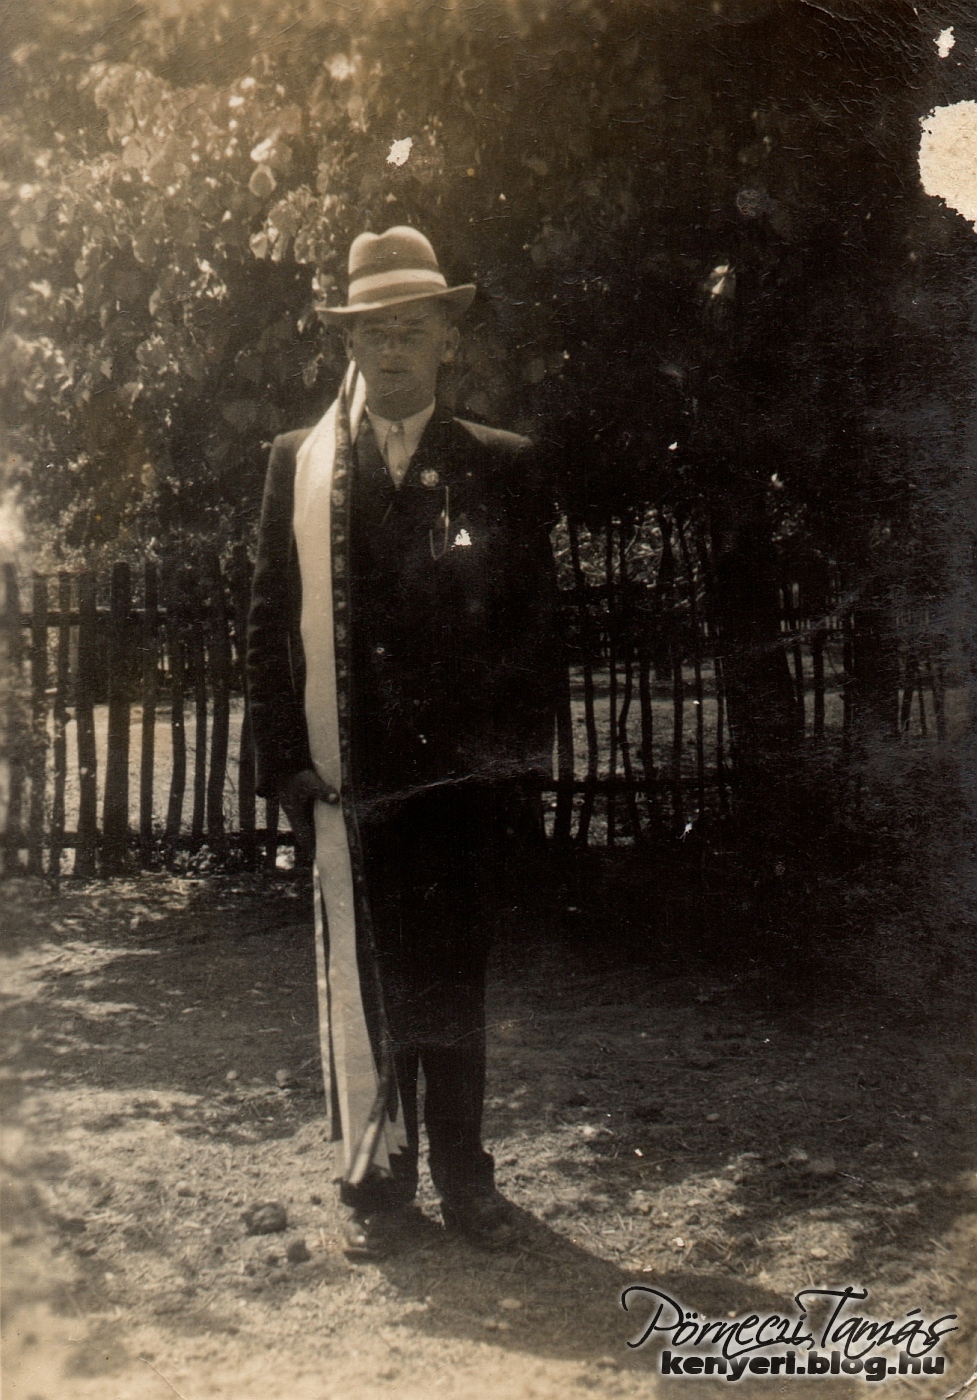 Hencz Jenő a besorozásakor, ünneplőben és regruta kalapban. A fotó Kenyeriben készült 1940-ben. (Köszönet a fotóért Hencz Jenőnek)